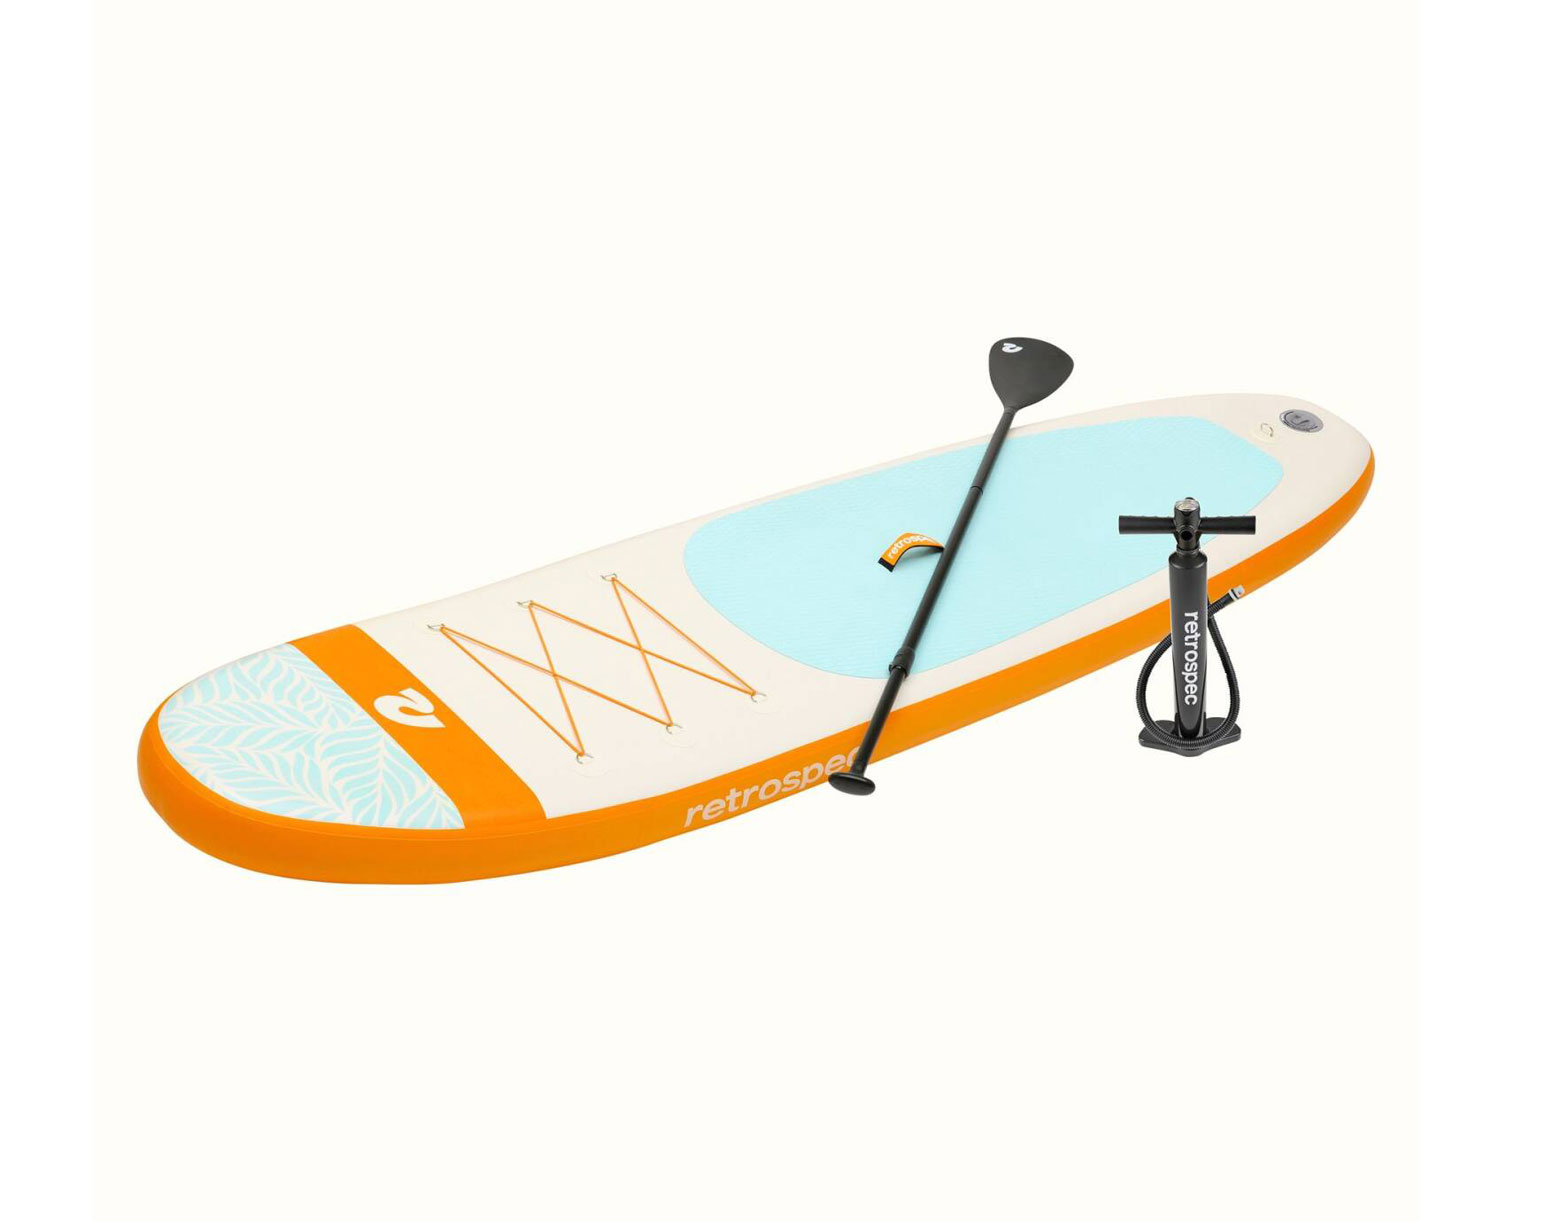 2021秋冬新作】 Retrospec Weekender 10' Inflatable Stand Up Paddleboard iSUP  Bundle with Carrying Case, Piece Adjustable Aluminum Paddle, Removable  Fins, Pump, an